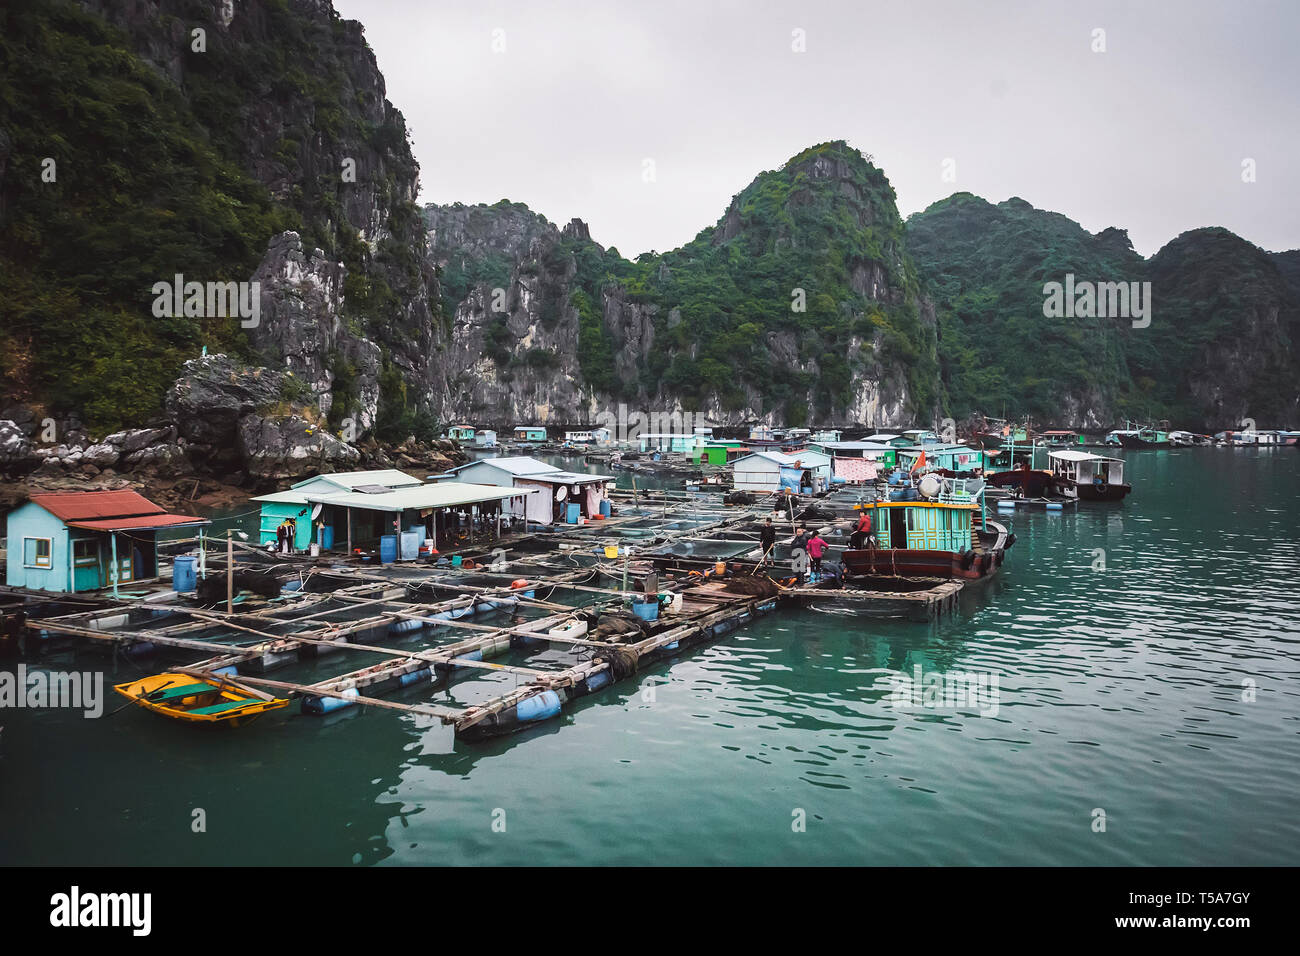 Pisciculture flottante dans la baie de Ha Long vietnam. production de poissons et fruits de mer dans les pauvres, les indigents. Banque D'Images